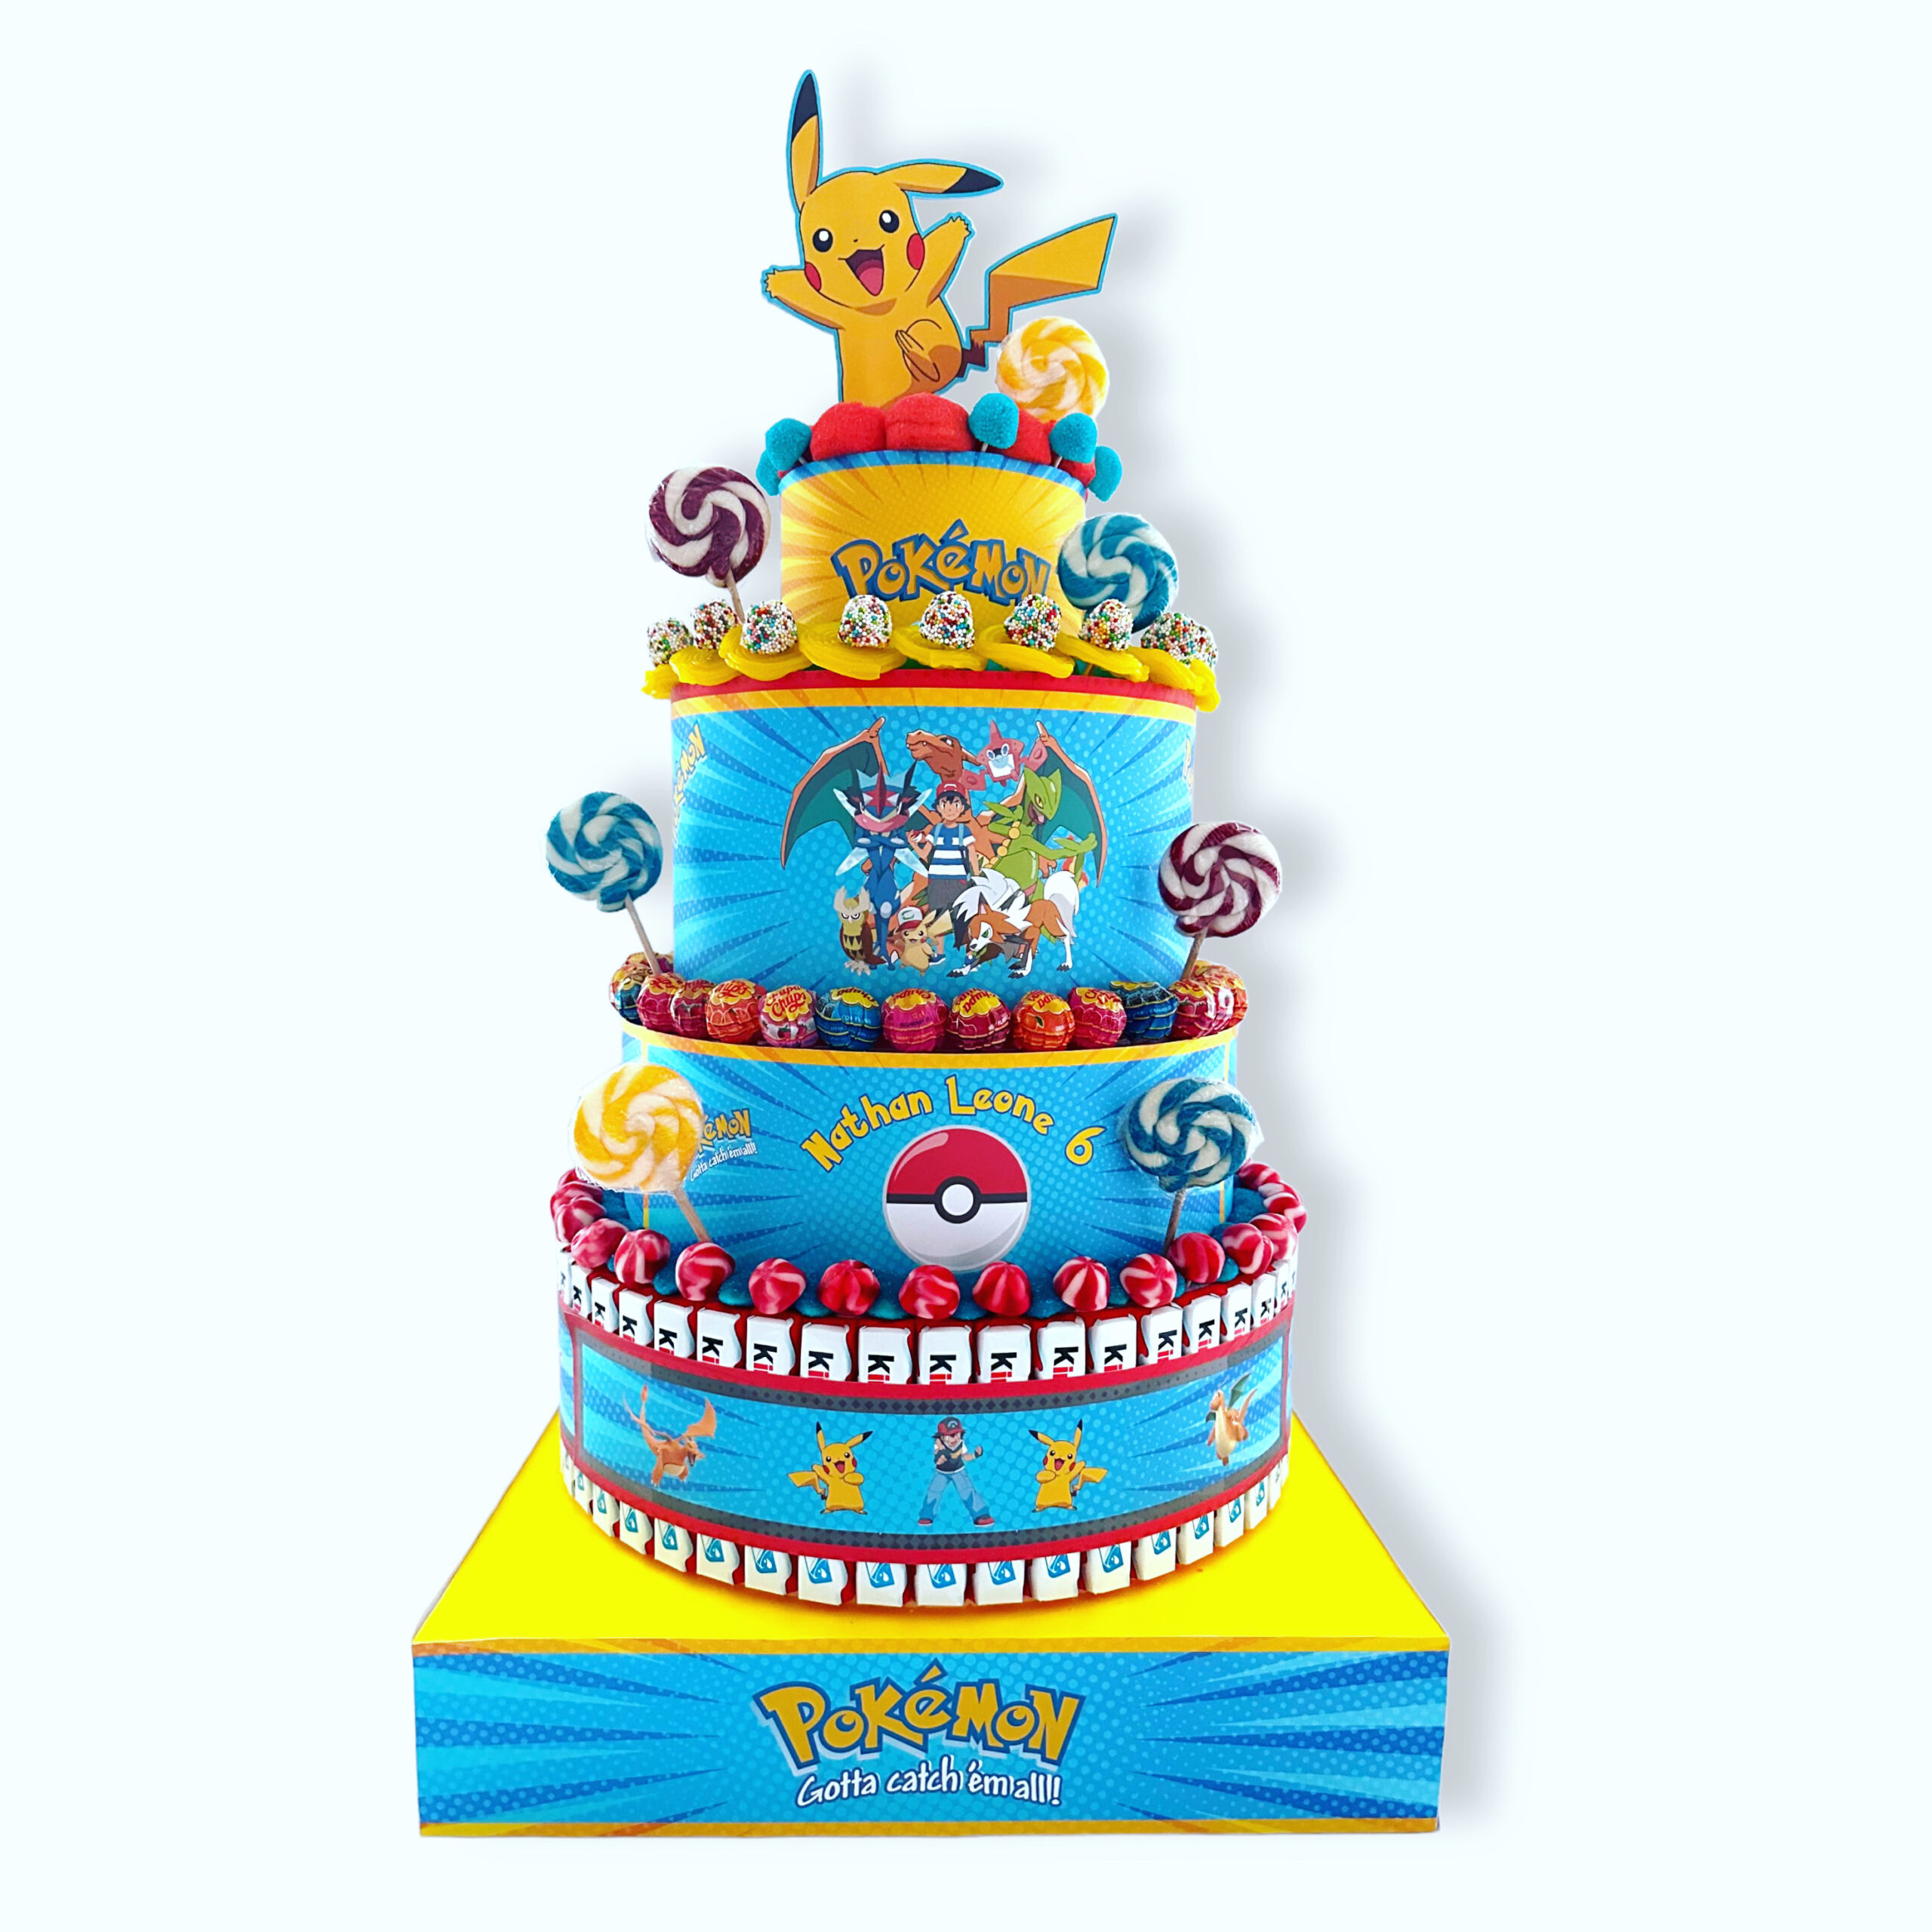 Bambini  Festa di compleanno pokemon, Arte per torte, Torta pokemon